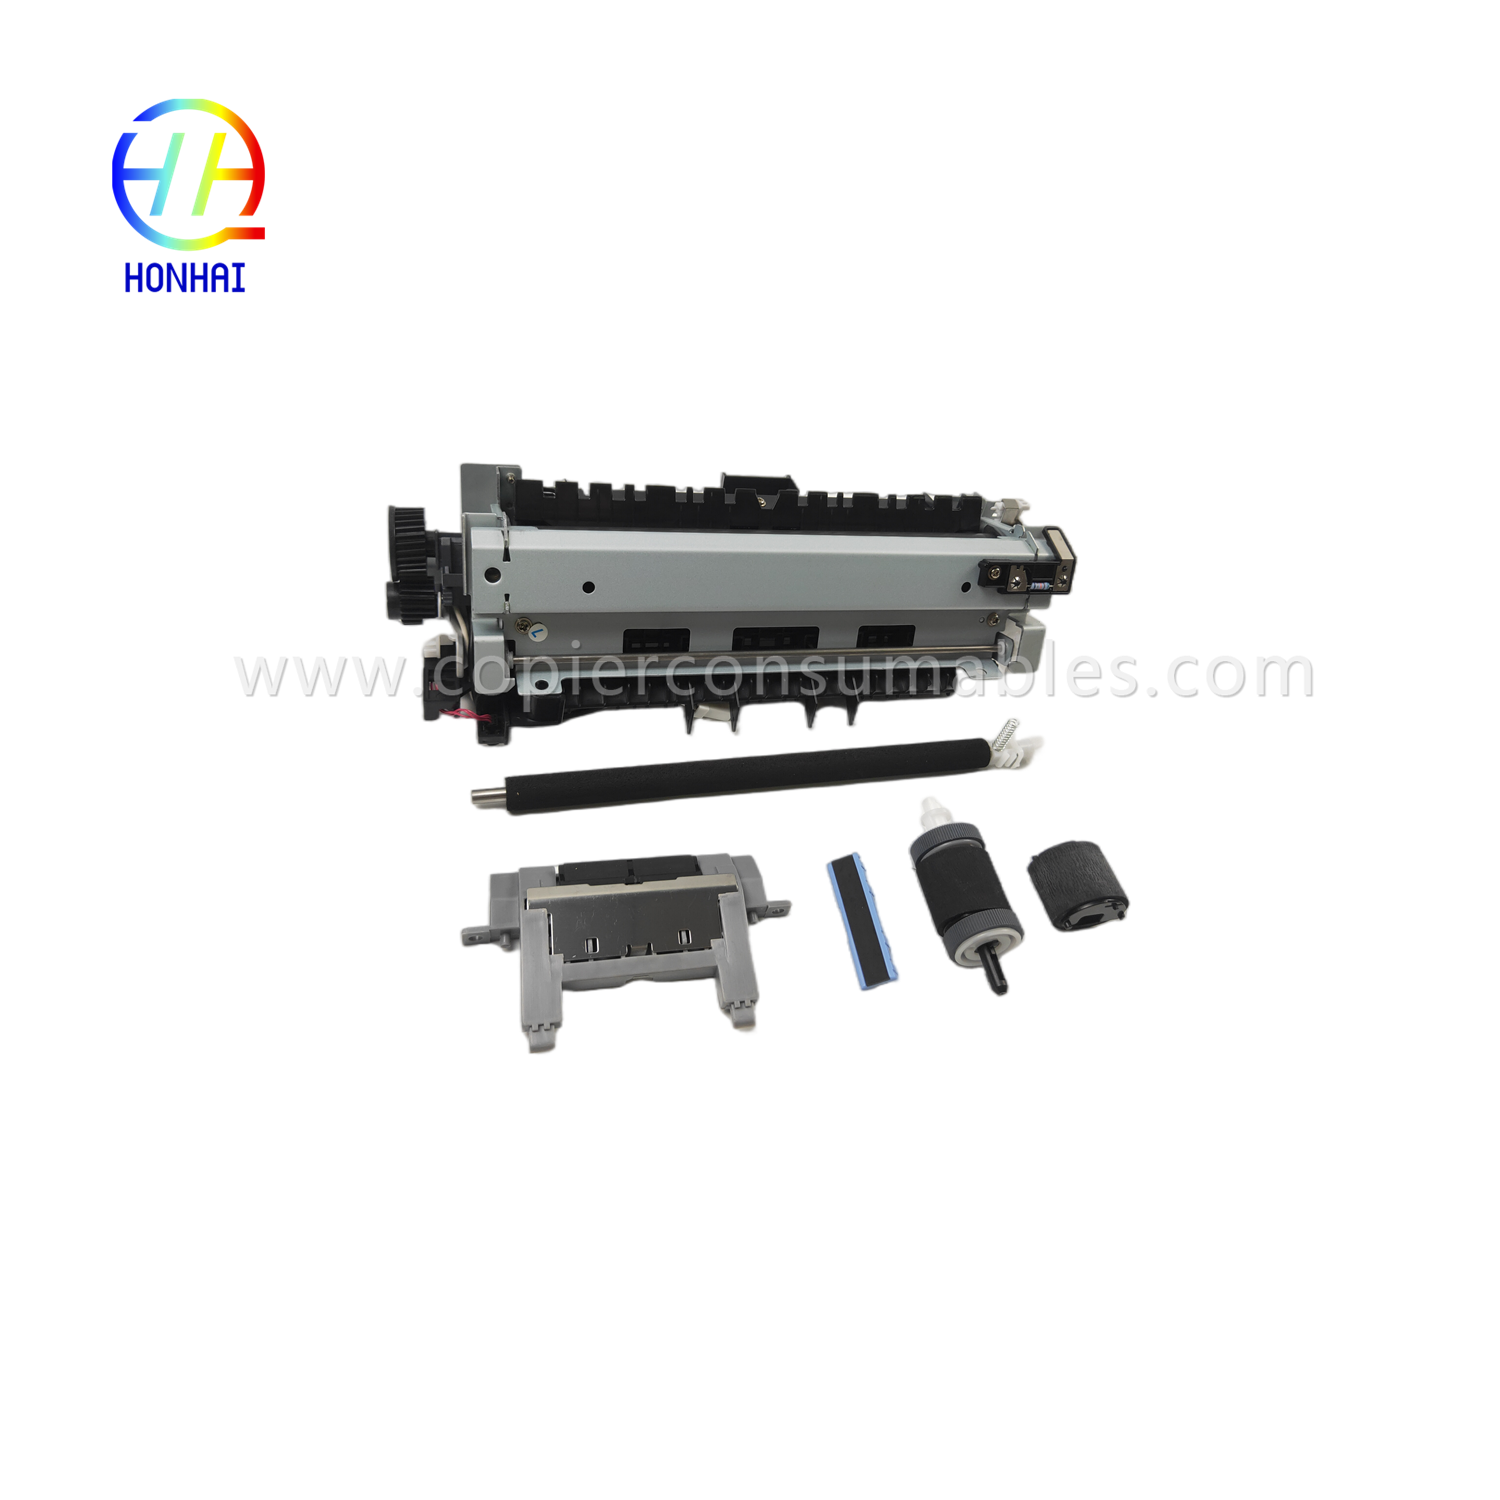 https://c585.goodao.net/maintenance-kit-220v-japan-for-hp-cf116-67903-laserjet-enterprise-500-mfp-m525-flow-mfp-m525c-pro-mfp-m521-includes- Fuser-Transfer-Roller-Tray-1-Trennpad-Tray-2-Roller-Tray-2-Trennpad-Produkt/